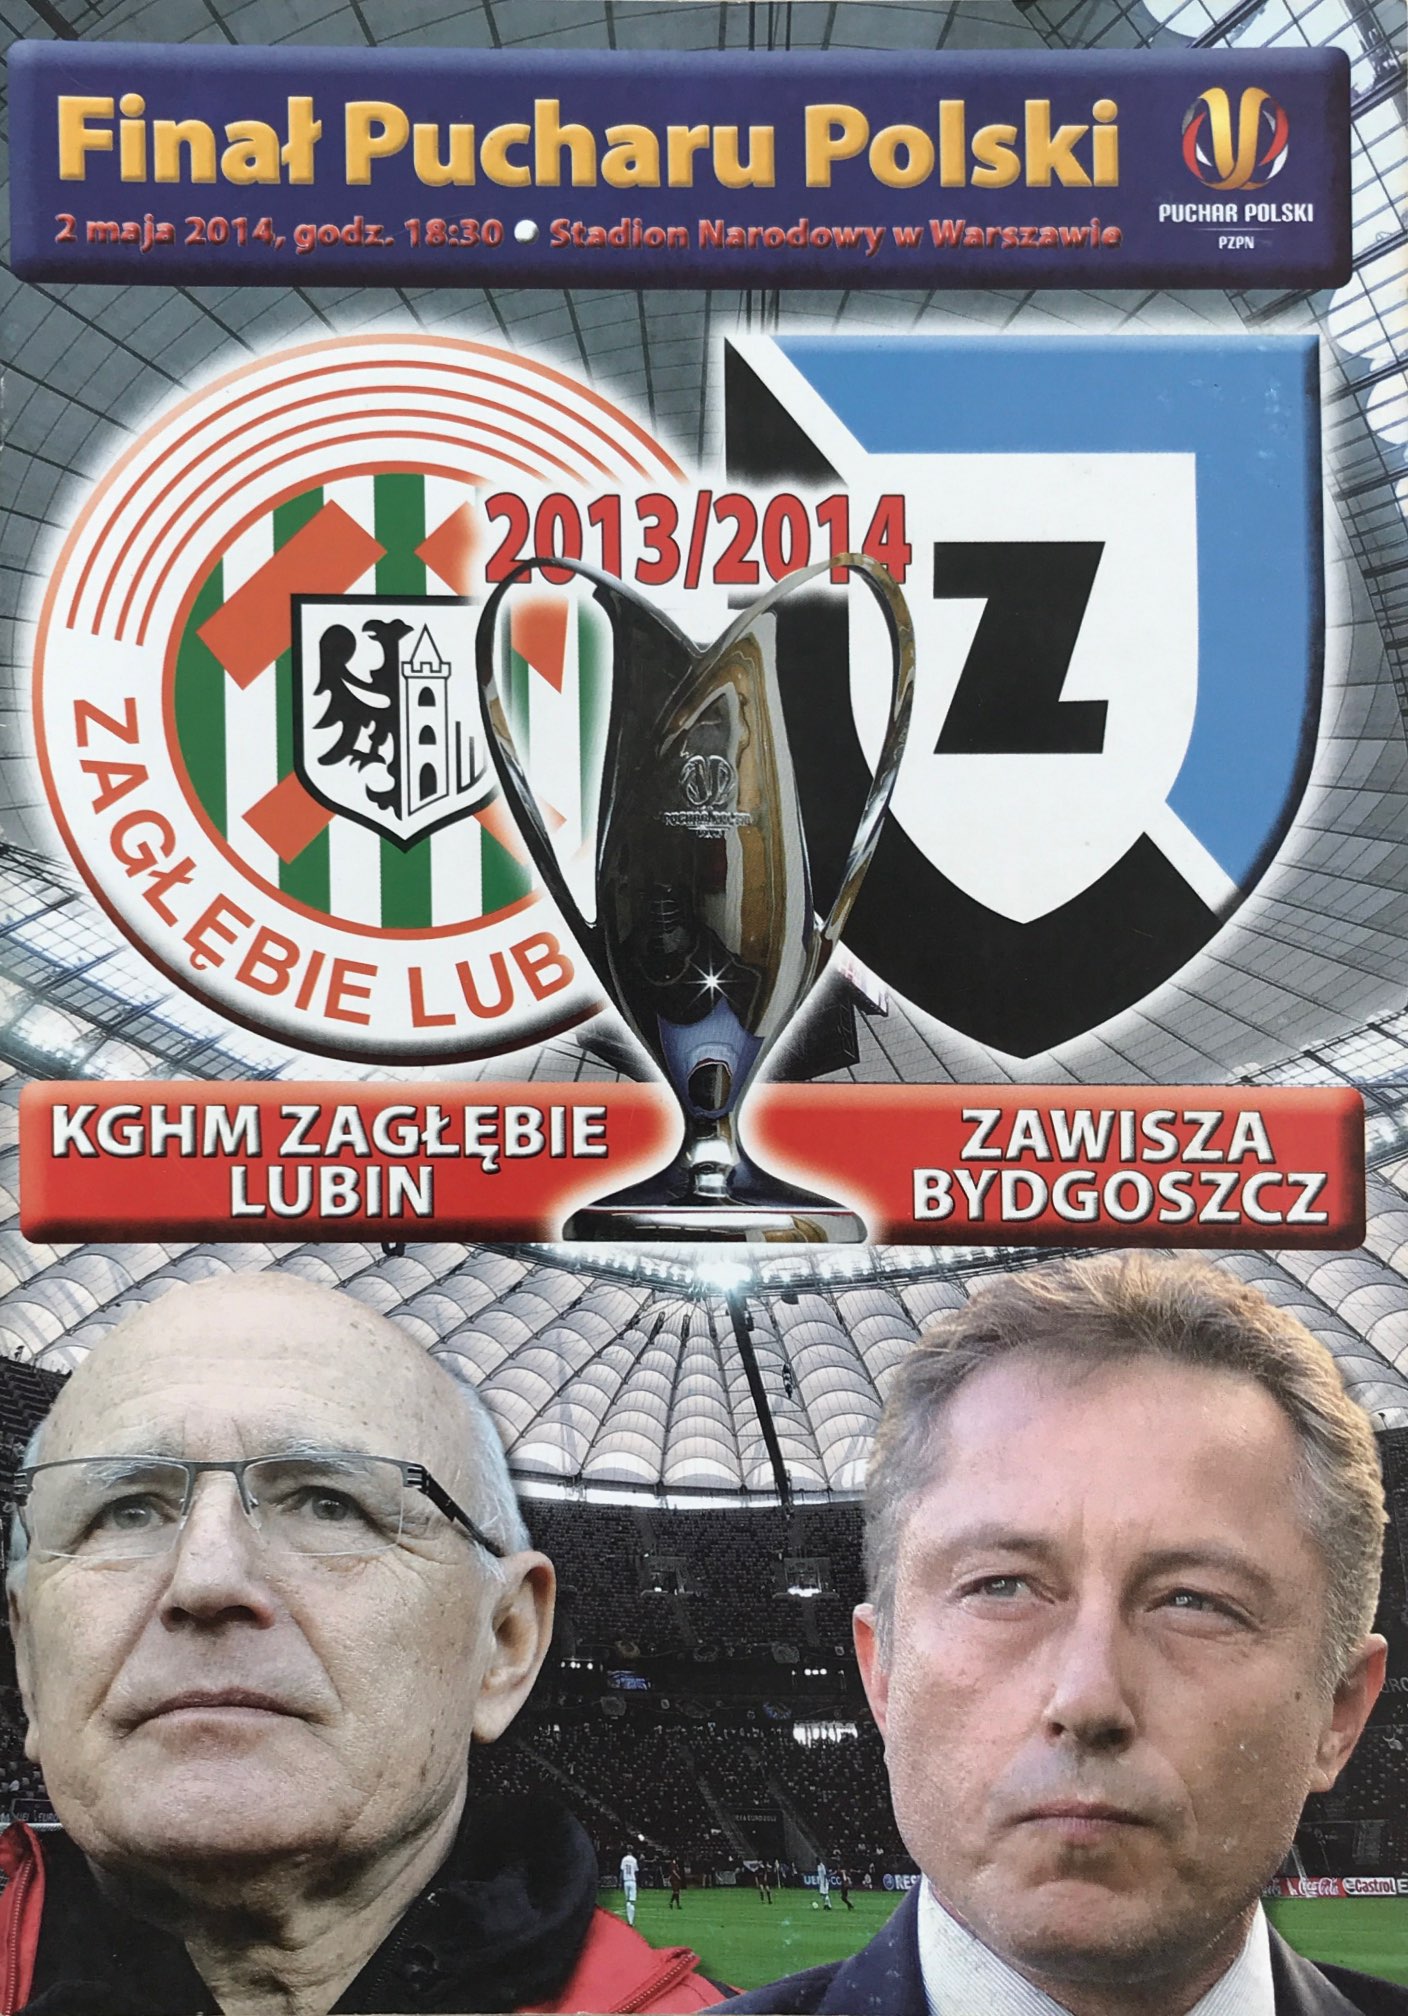 Program meczowy Zagłębie Lubin - Zawisza Bydgoszcz 0:0, k. 5-6 (02.05.2014).